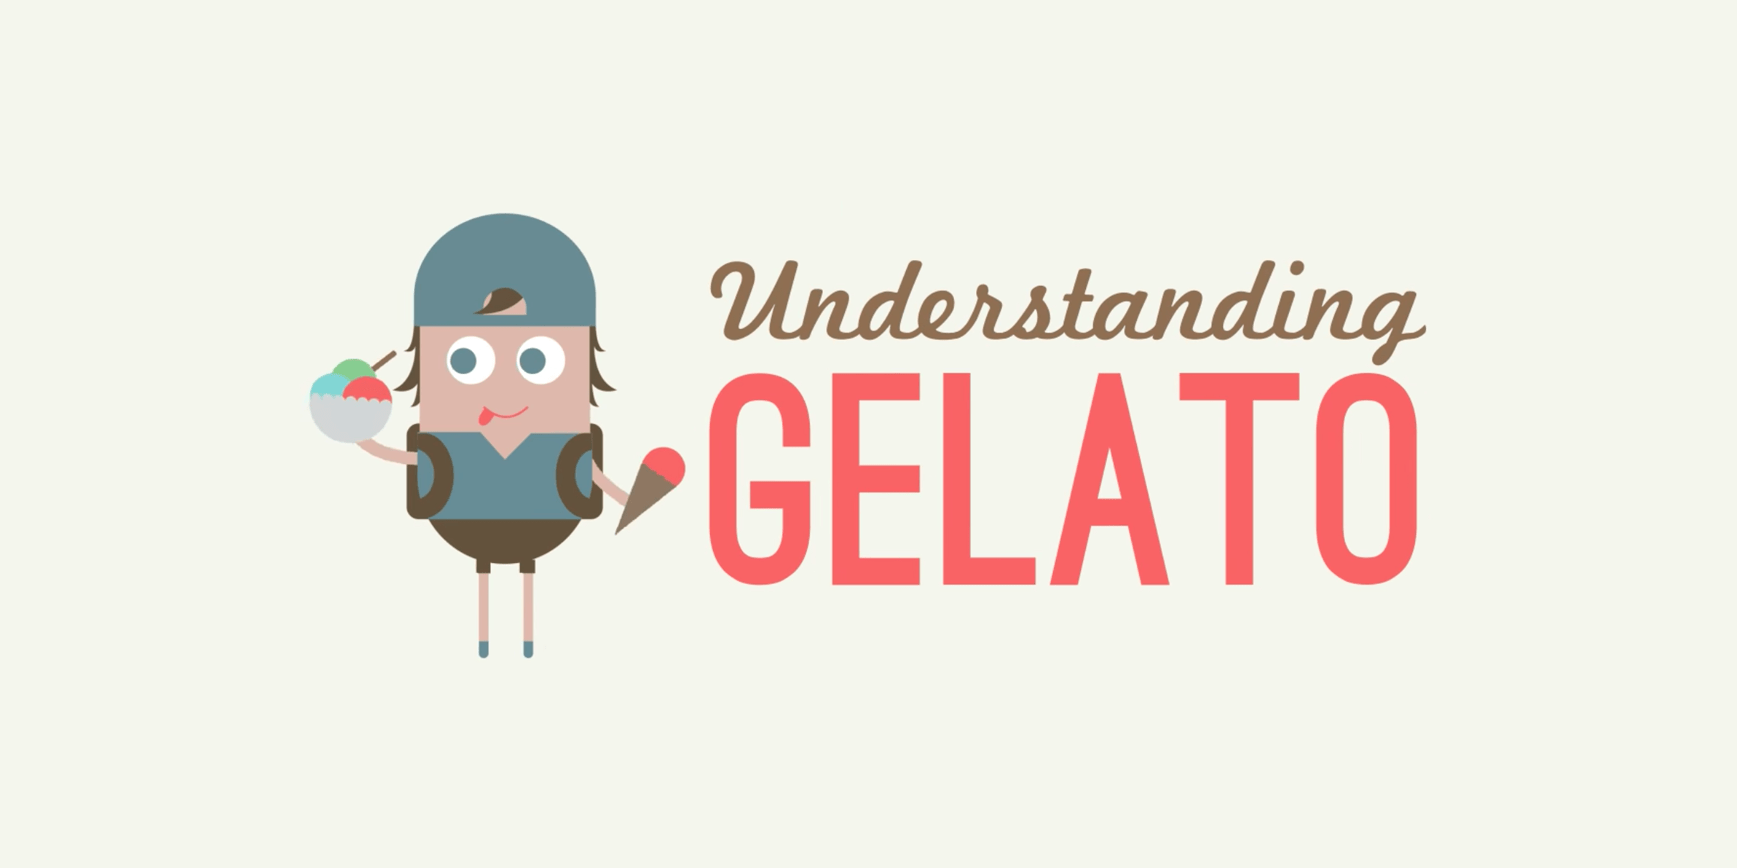 Understanding Gelato